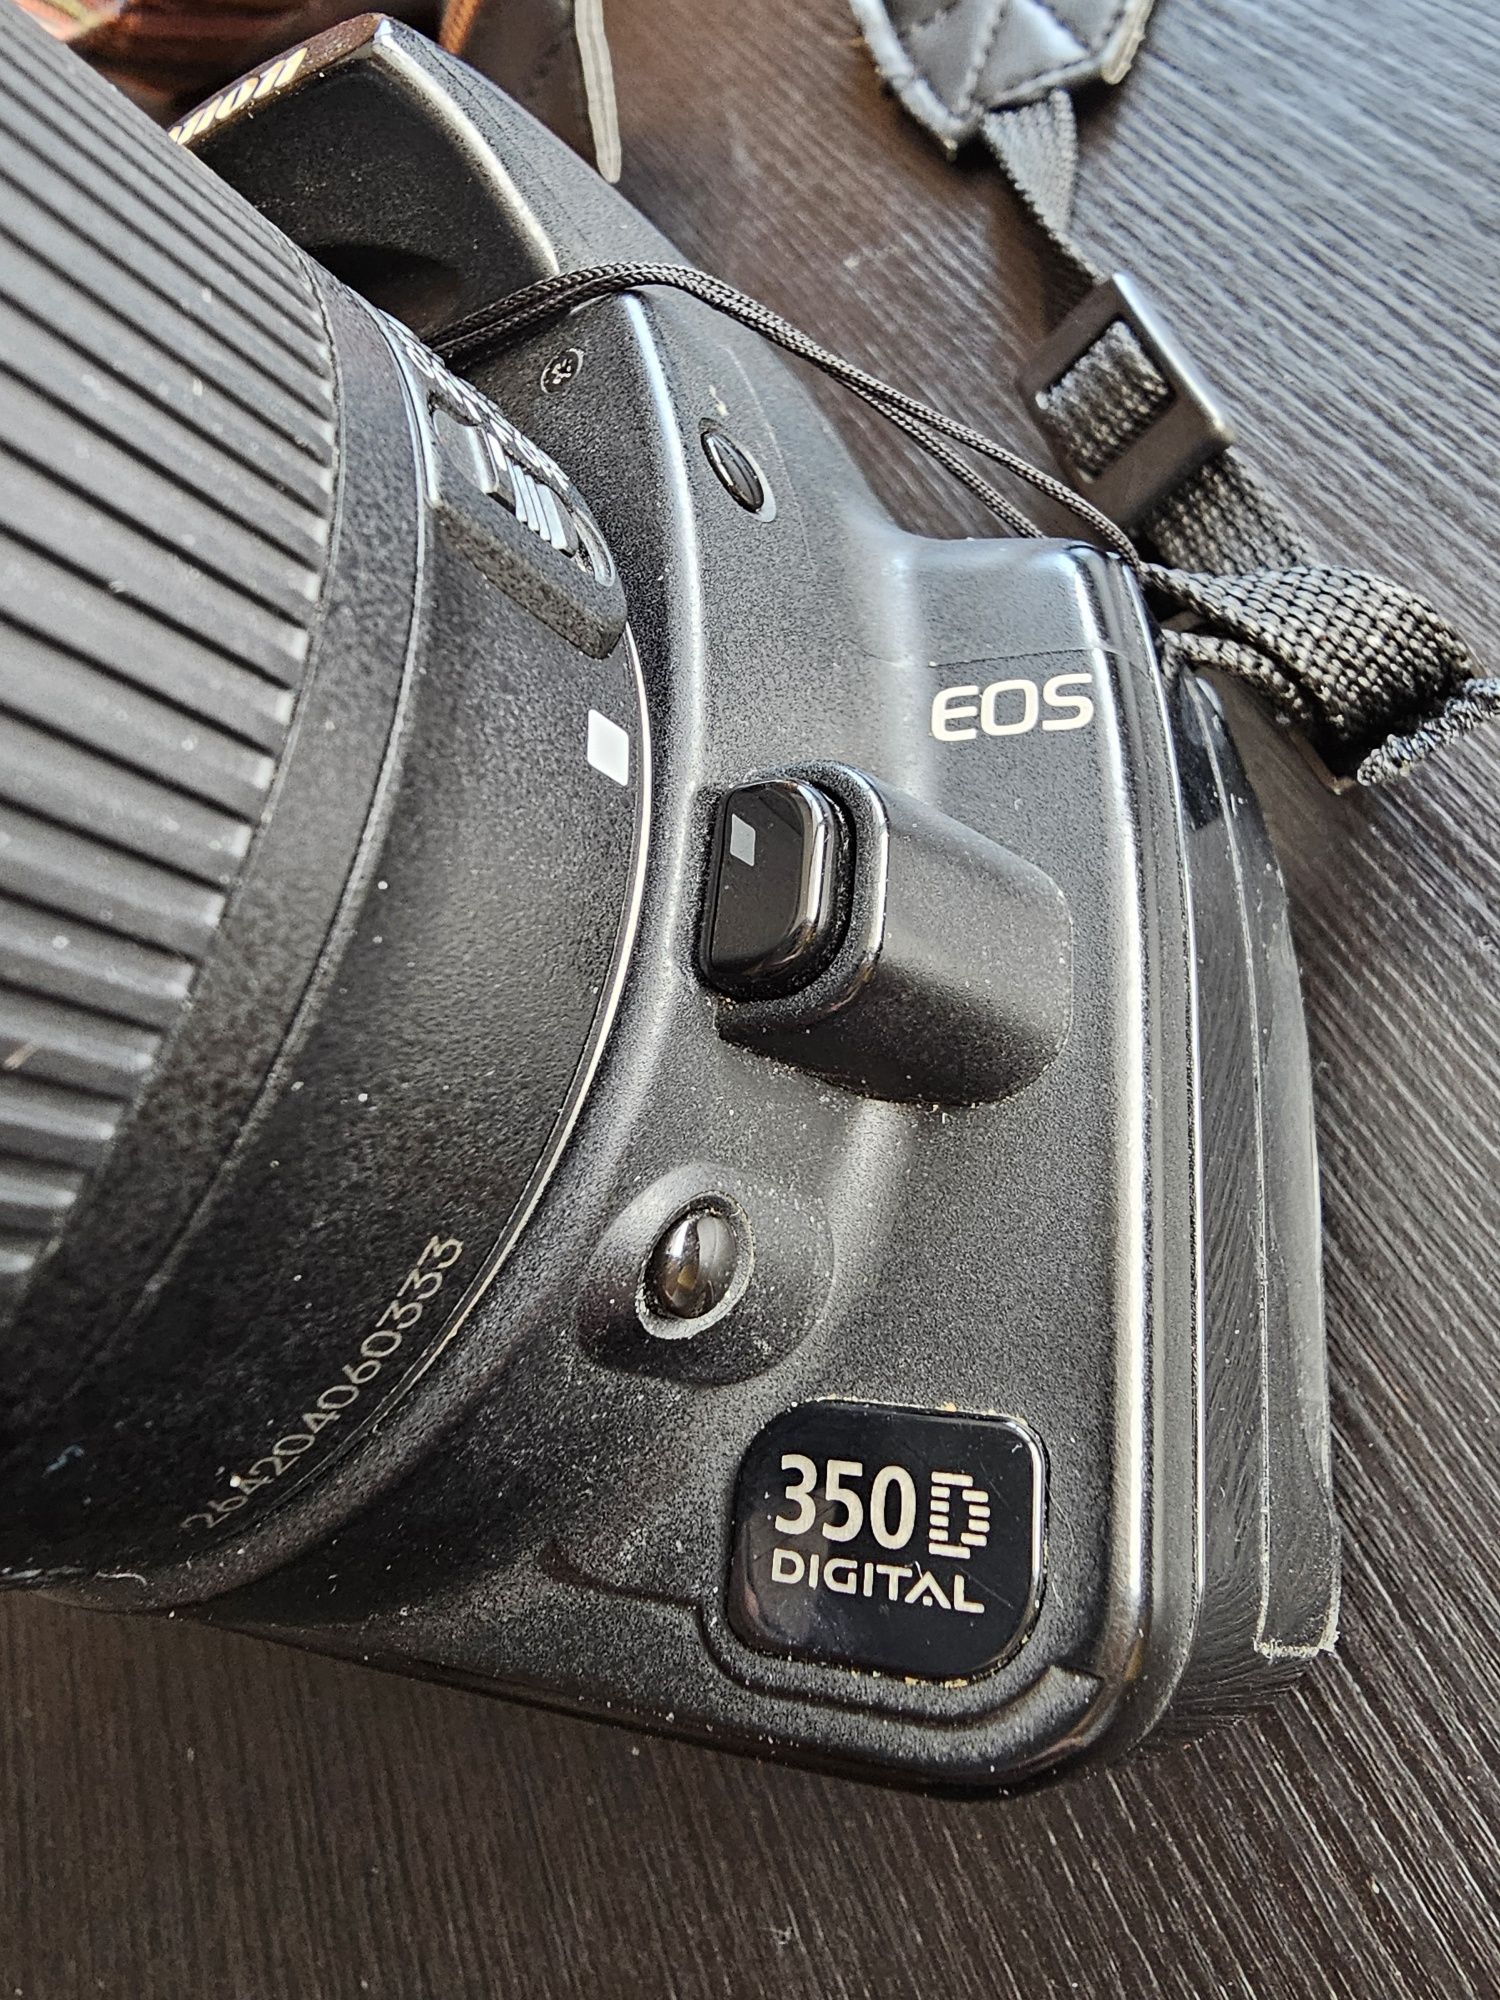 Фотоаппарат Canon EOS 350D и объектив Canon EFS 18-55mm